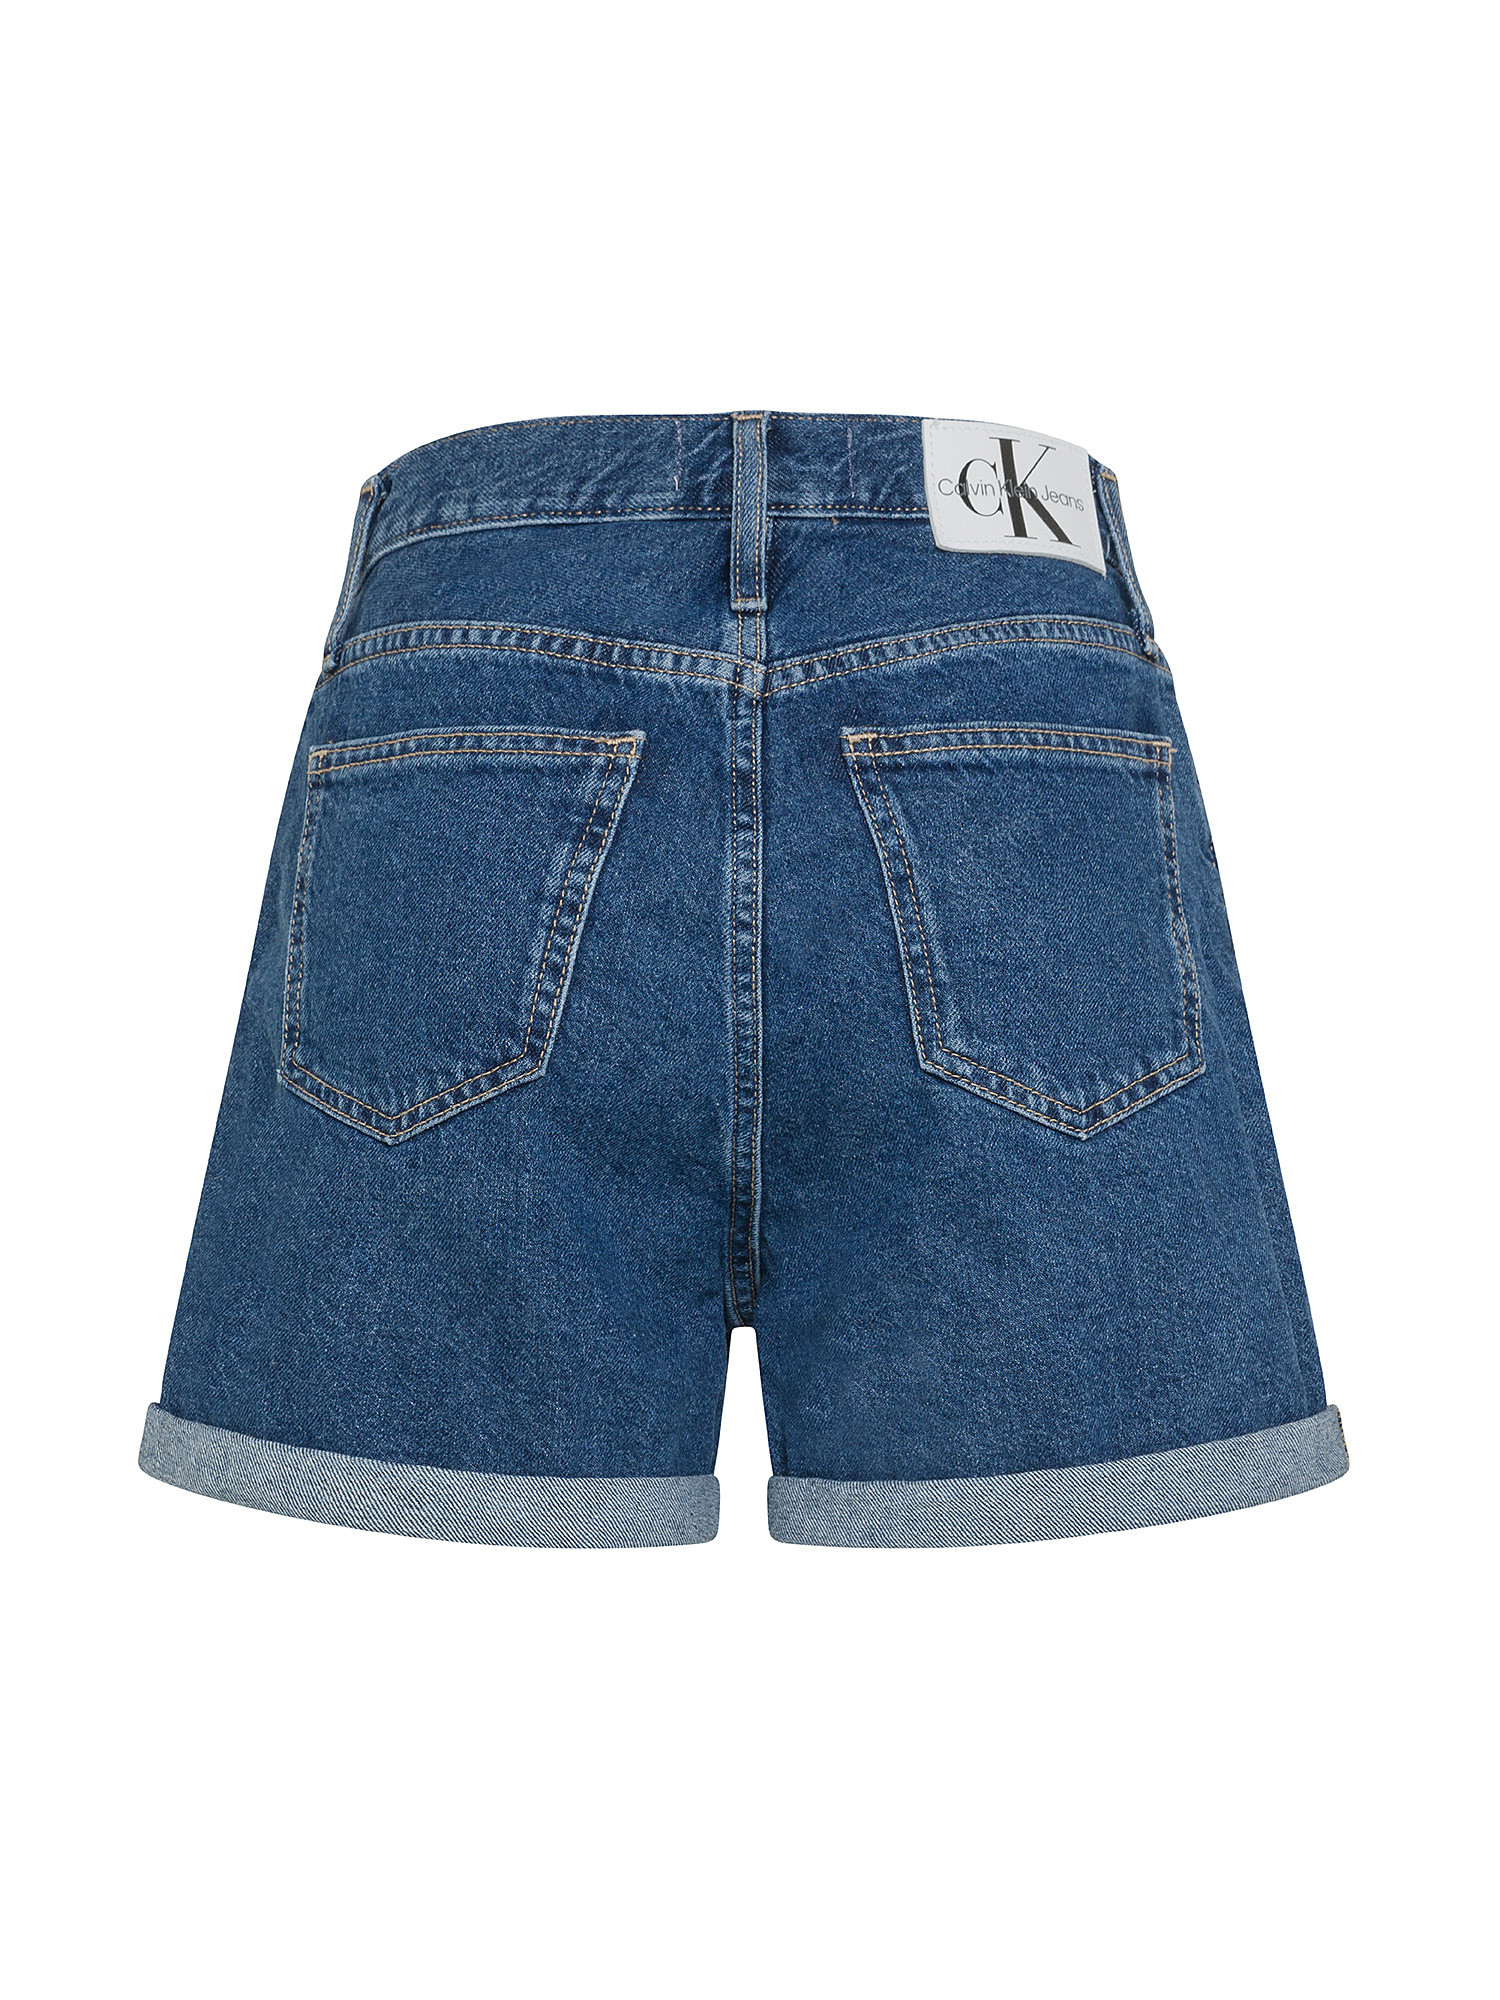 Calvin Klein Jeans - Mom fit denim shorts, Denim, large image number 1